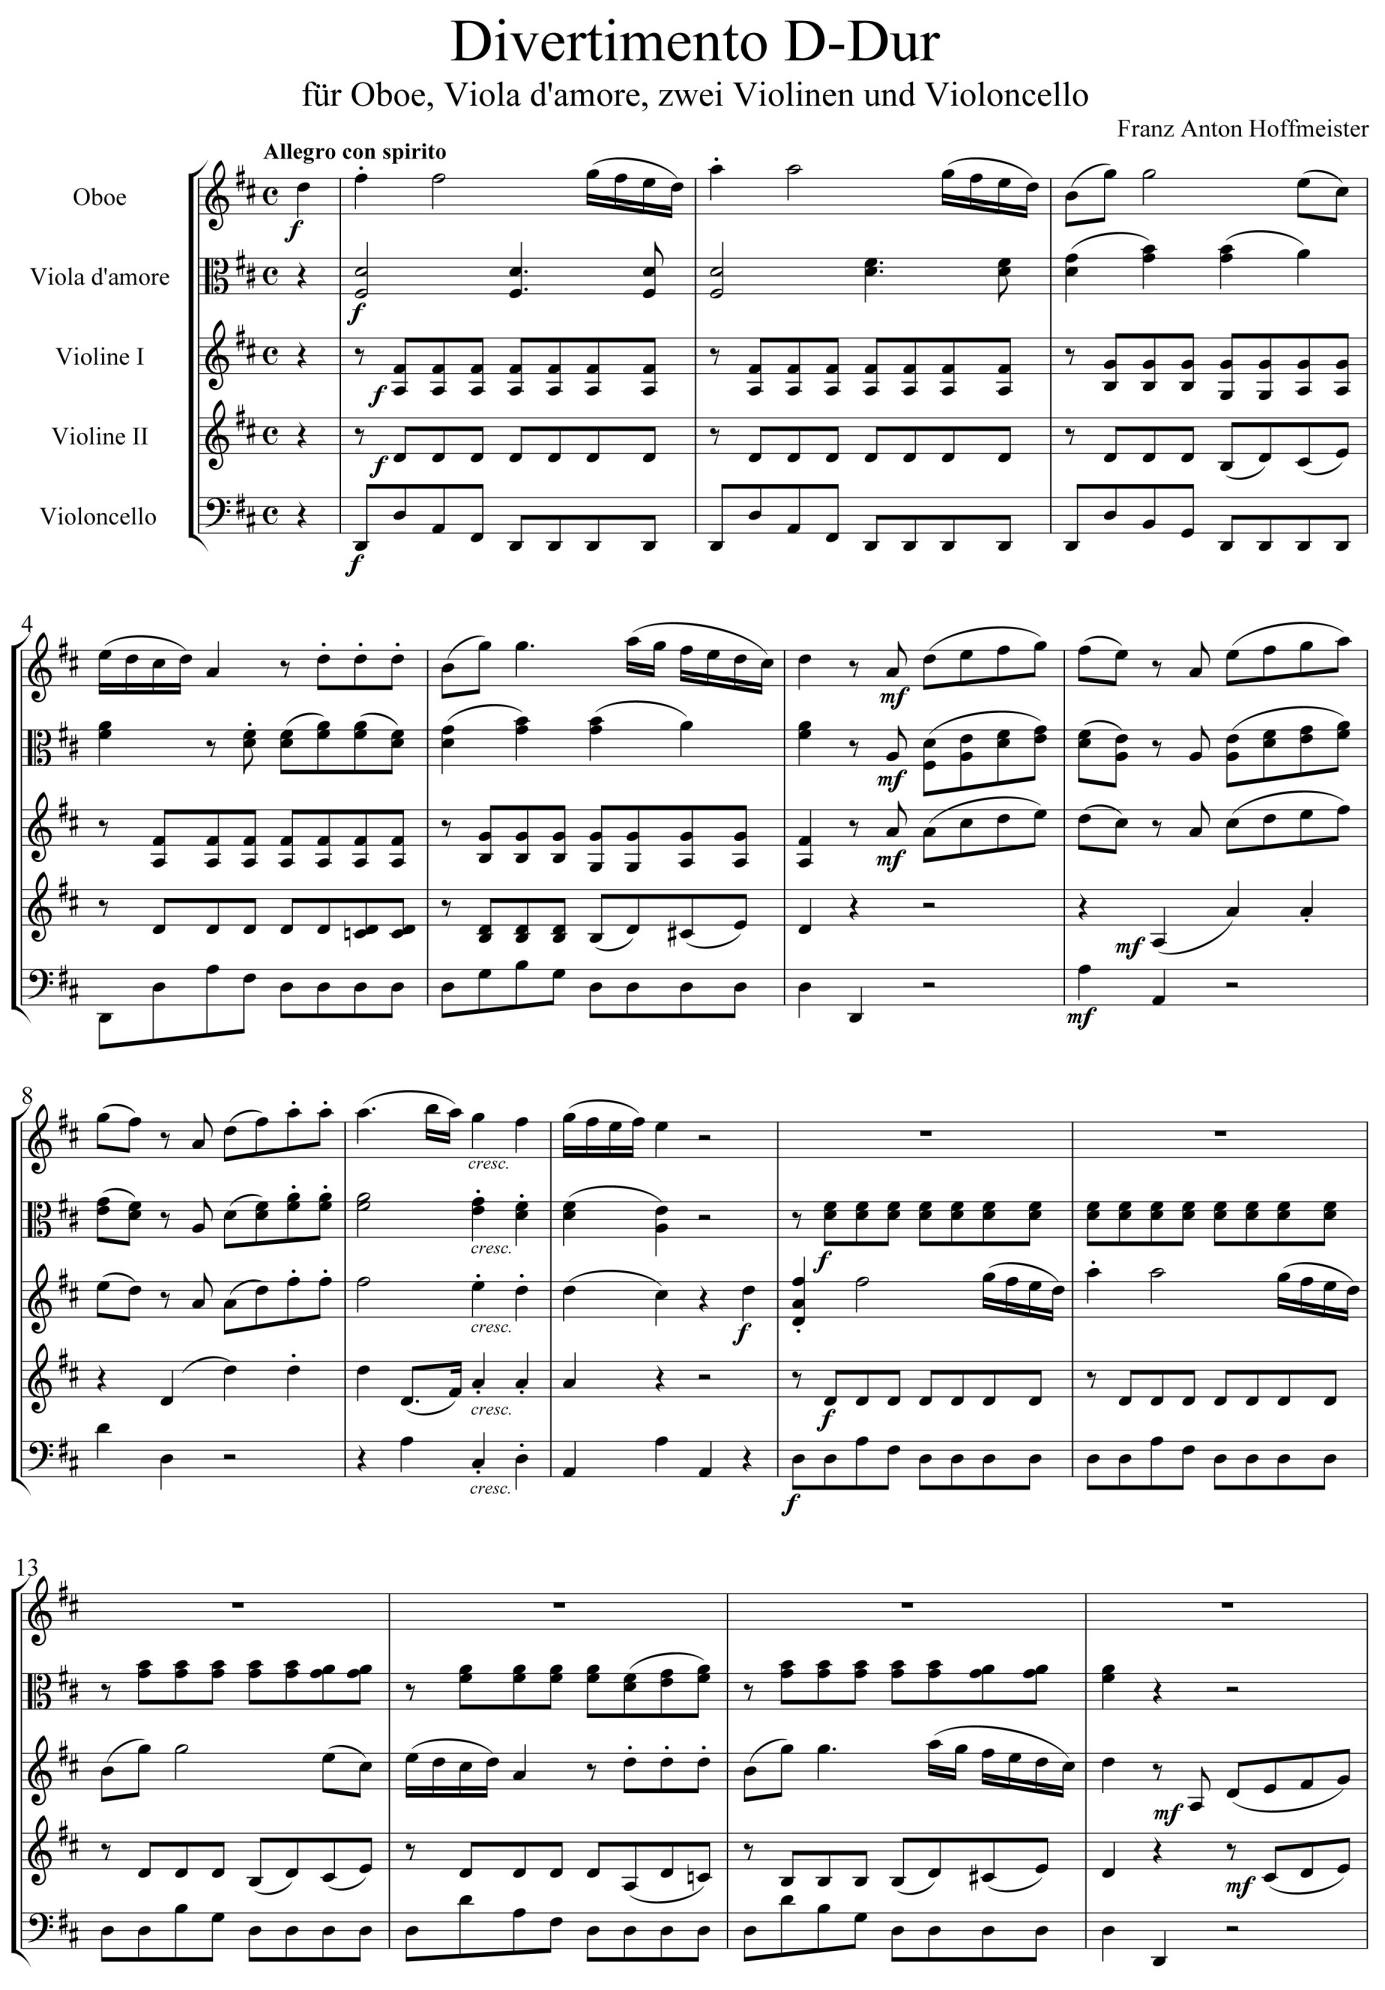 Franz Anton Hoffmeister Divertimento D-Dur Oboe, Viola d'amore, zwei Violinen und Violoncello